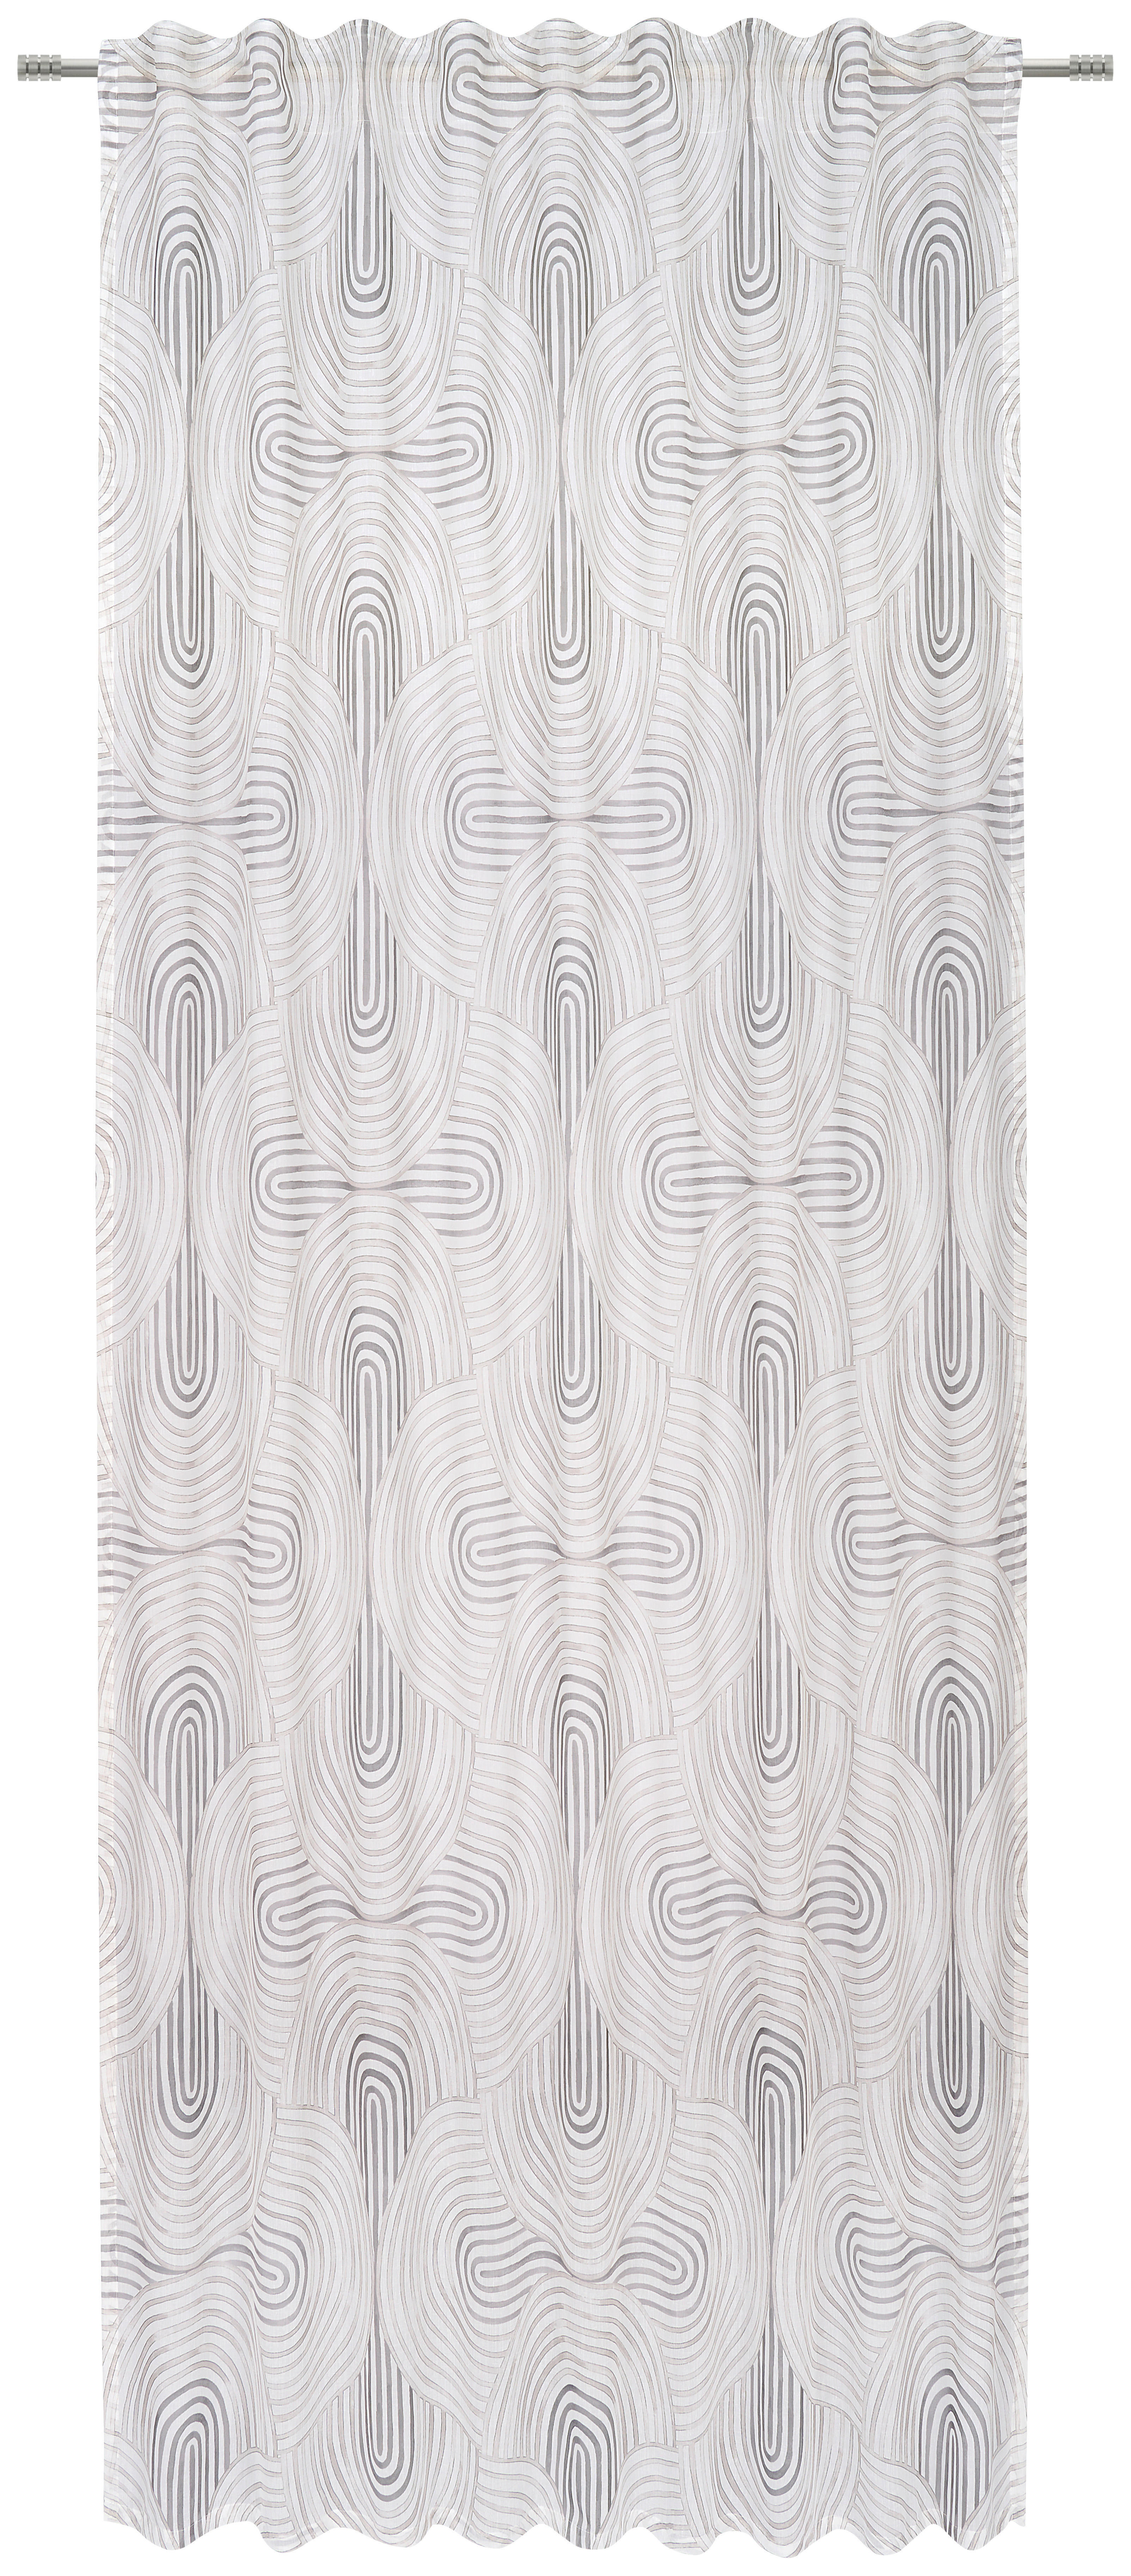 FERTIGVORHANG ROMANCE halbtransparent 140/255 cm   - Grau, Design, Textil (140/255cm) - Novel